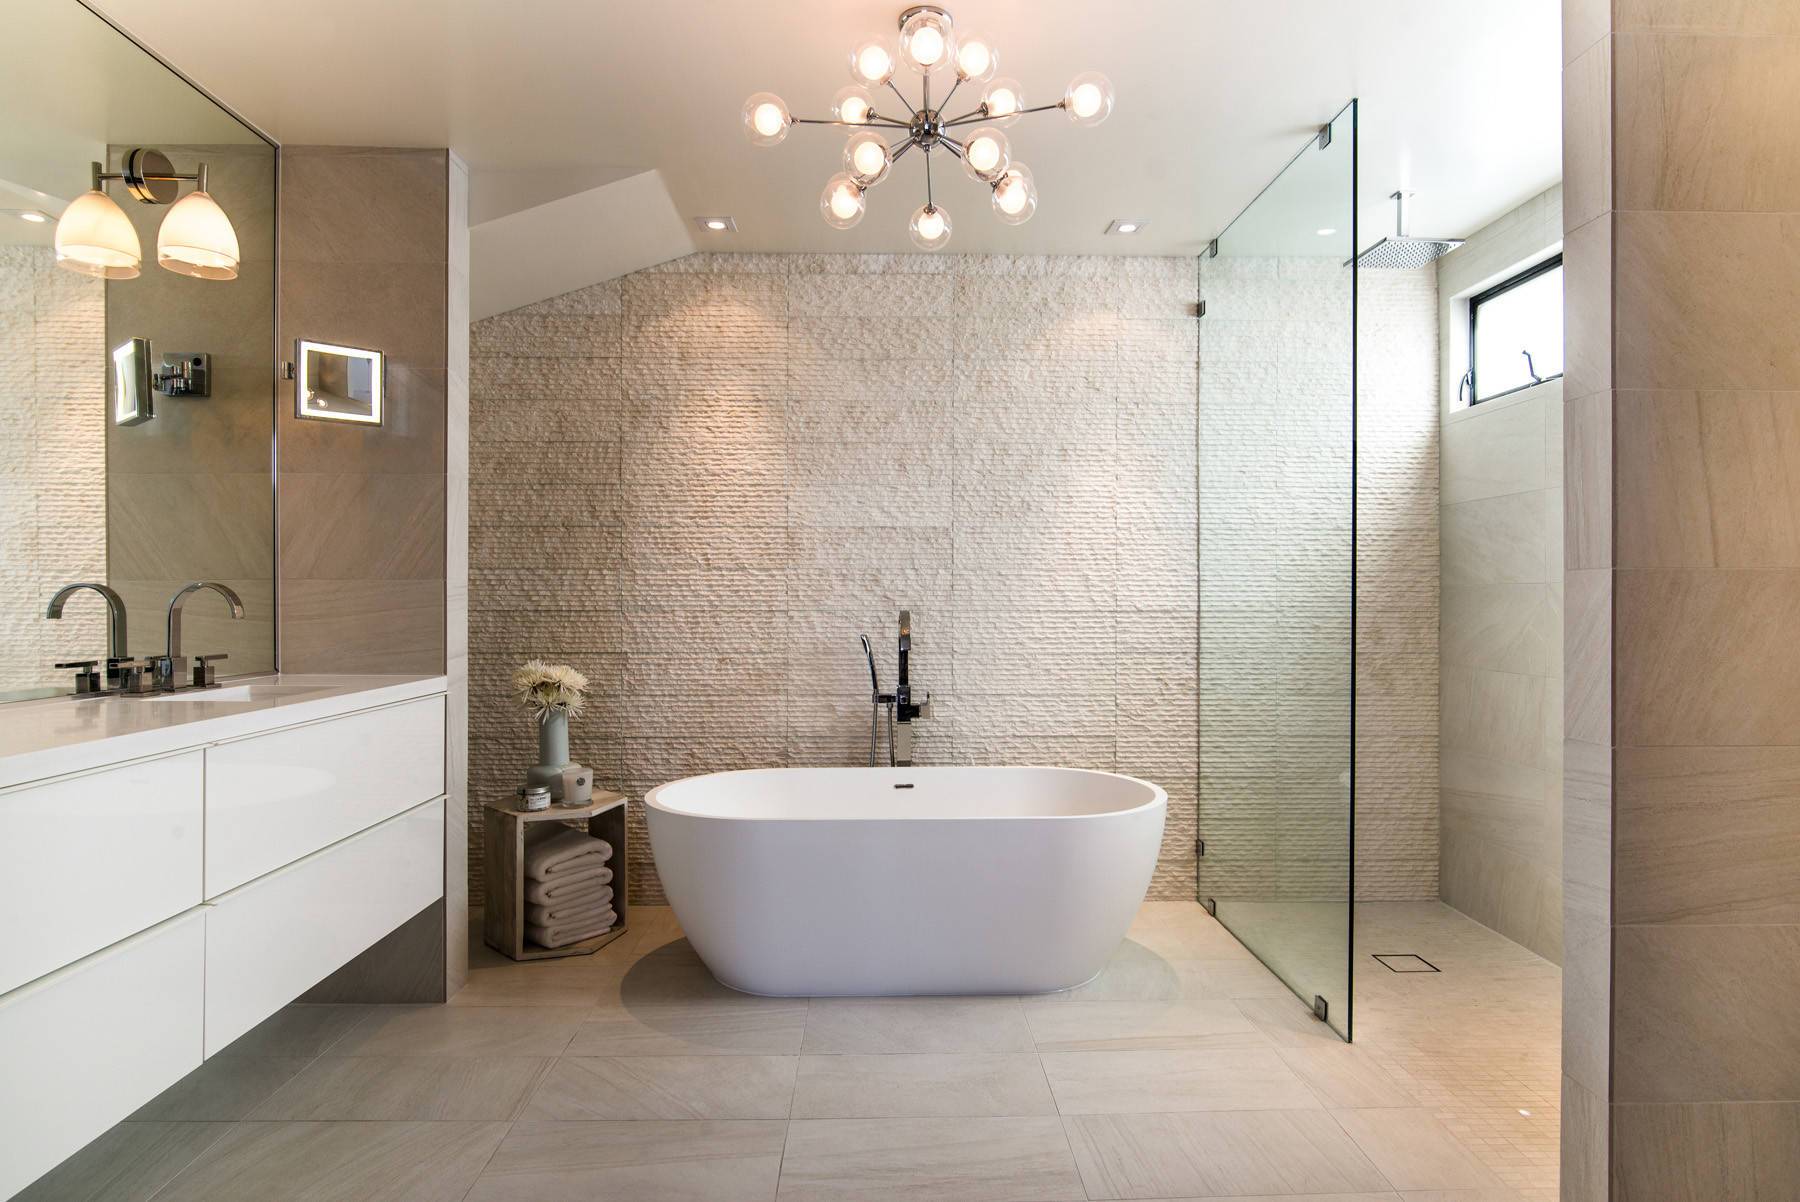 adm-bathroom-ellipse-freestanding-bathtub-glossy-white-63-sw-110-63-x-32-adm-bathroom-design-img_ea9100c706184daf_14-6737-1-0ddbcdf